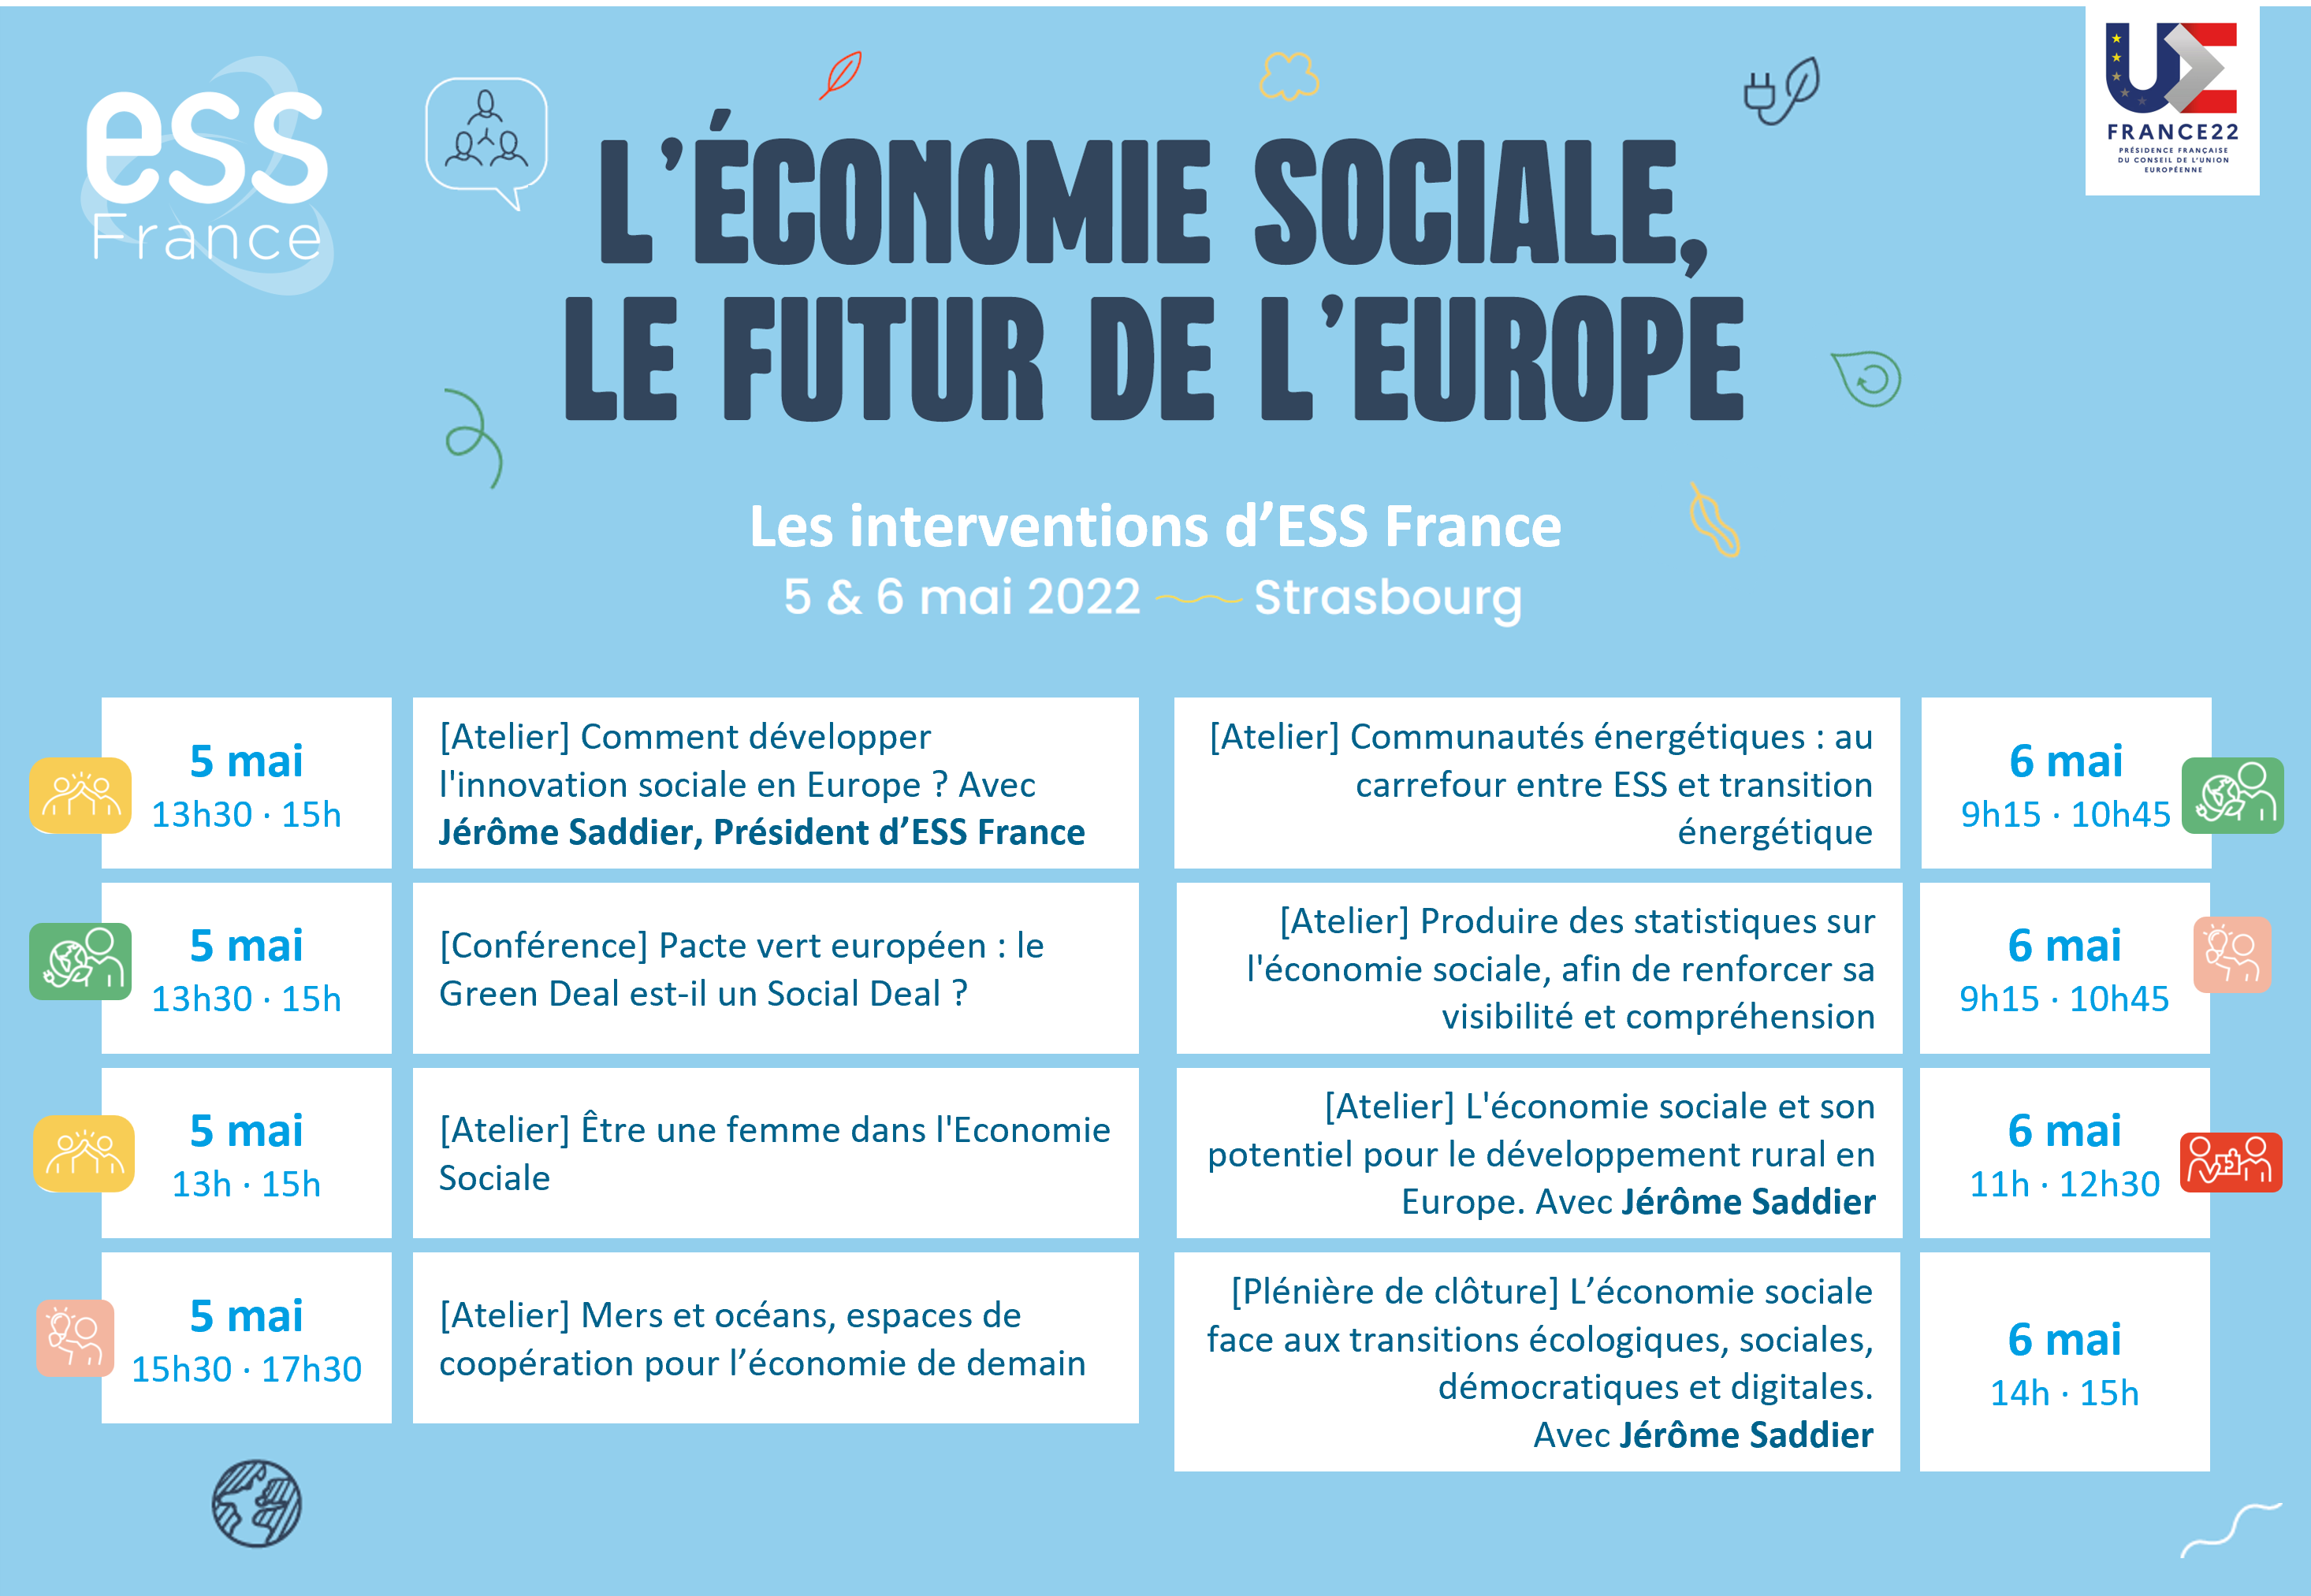 Les interventions d'ESS France au Sommet Européen de Strasbourg les 5 et 6 mai